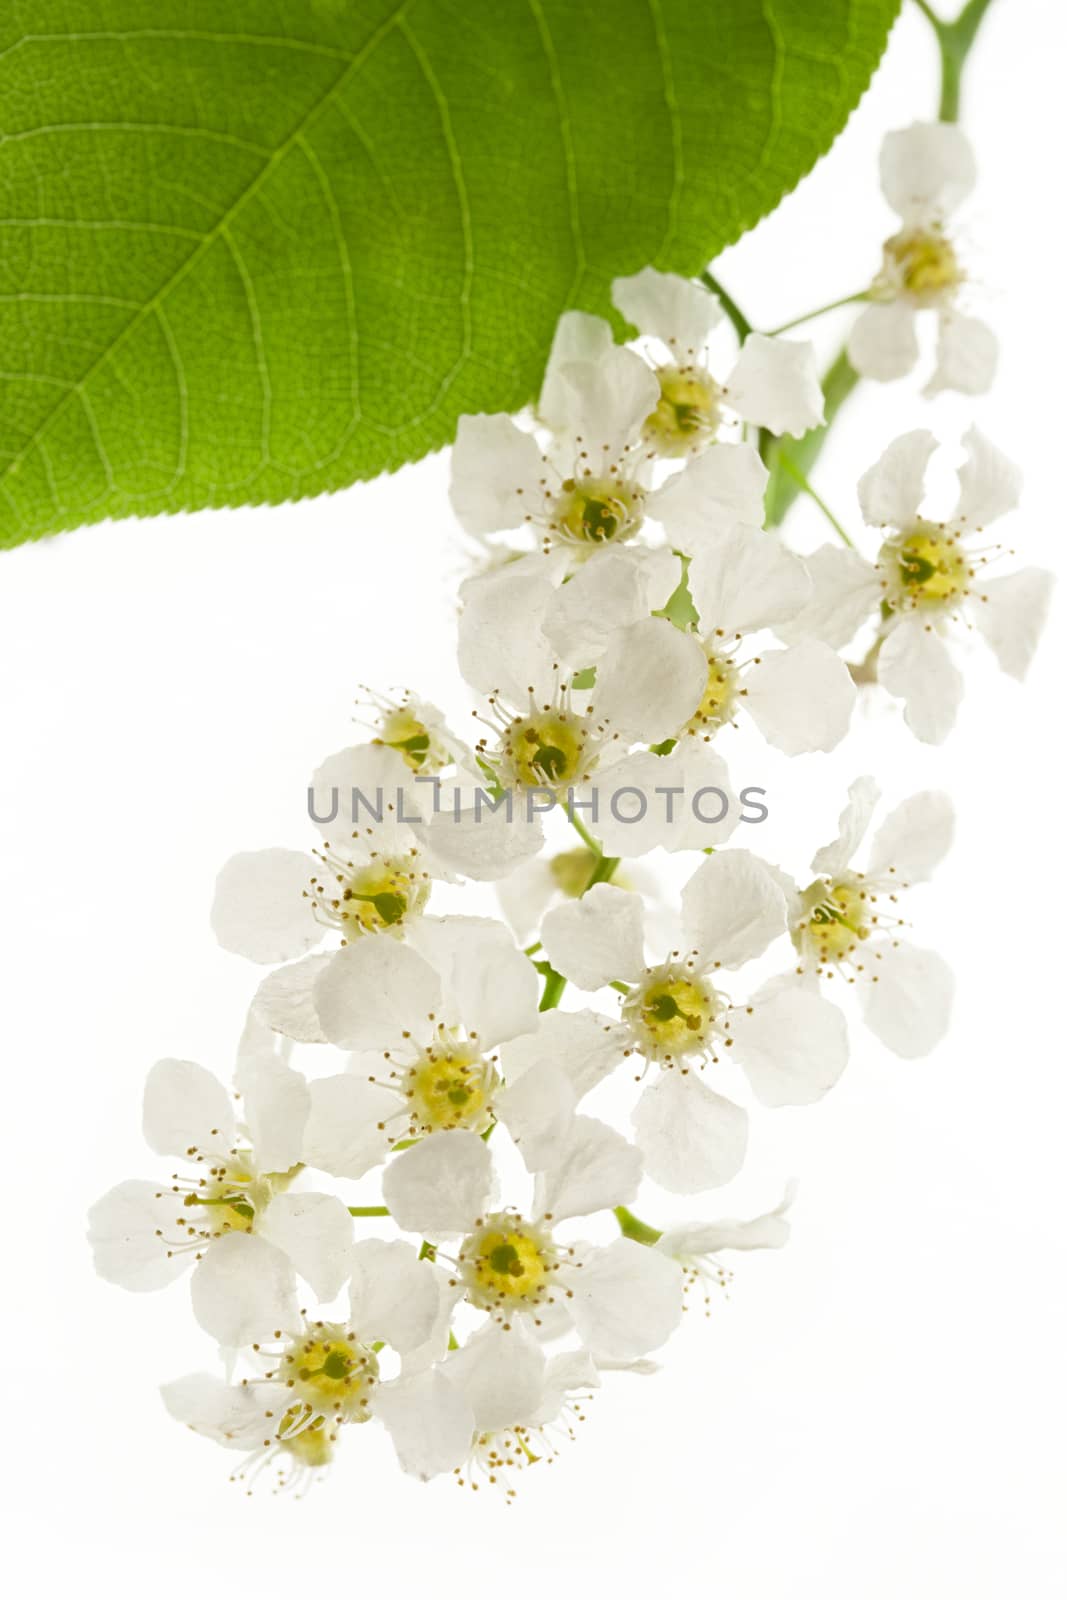 Bird cherry tree flowers on white by Garsya